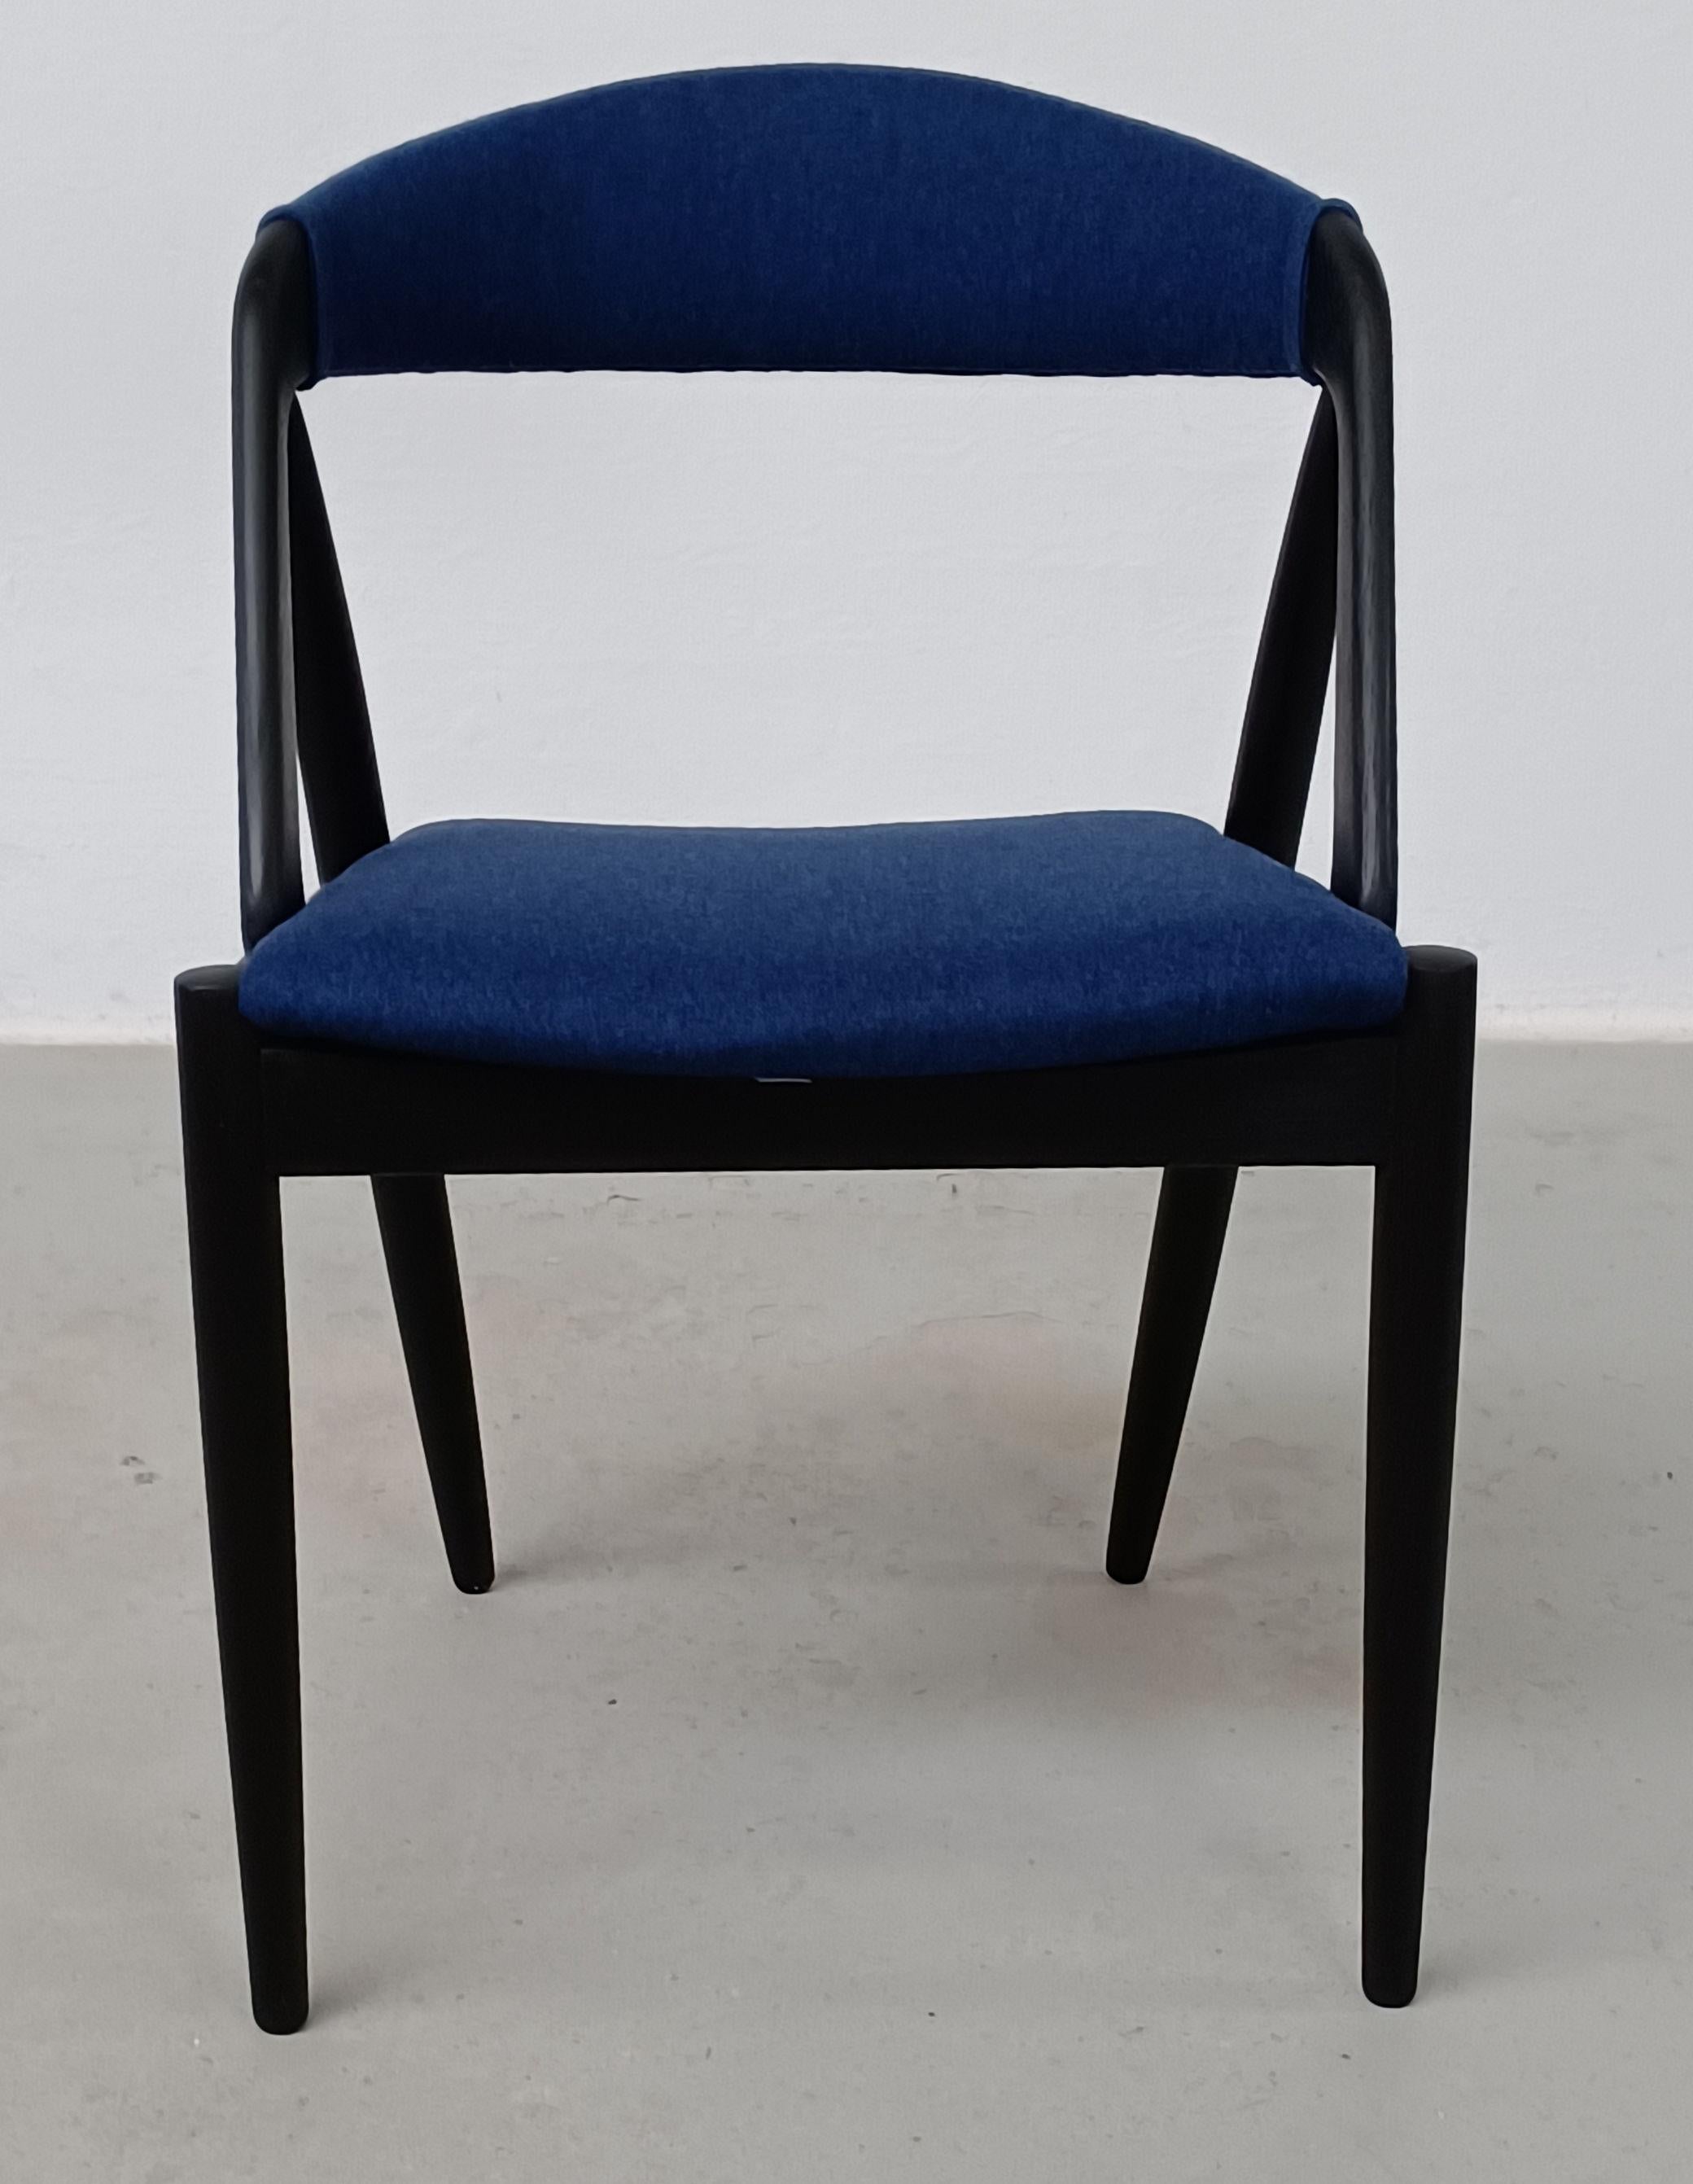 Ensemble de quatre chaises de salle à manger en chêne Kai Kristiansen entièrement restaurées, ébonisées et tapissées à nouveau

Les chaises de salle à manger A-frame modèle 31 ont été conçues par Kai Kristiansen en 1956 pour Schou-Andersens